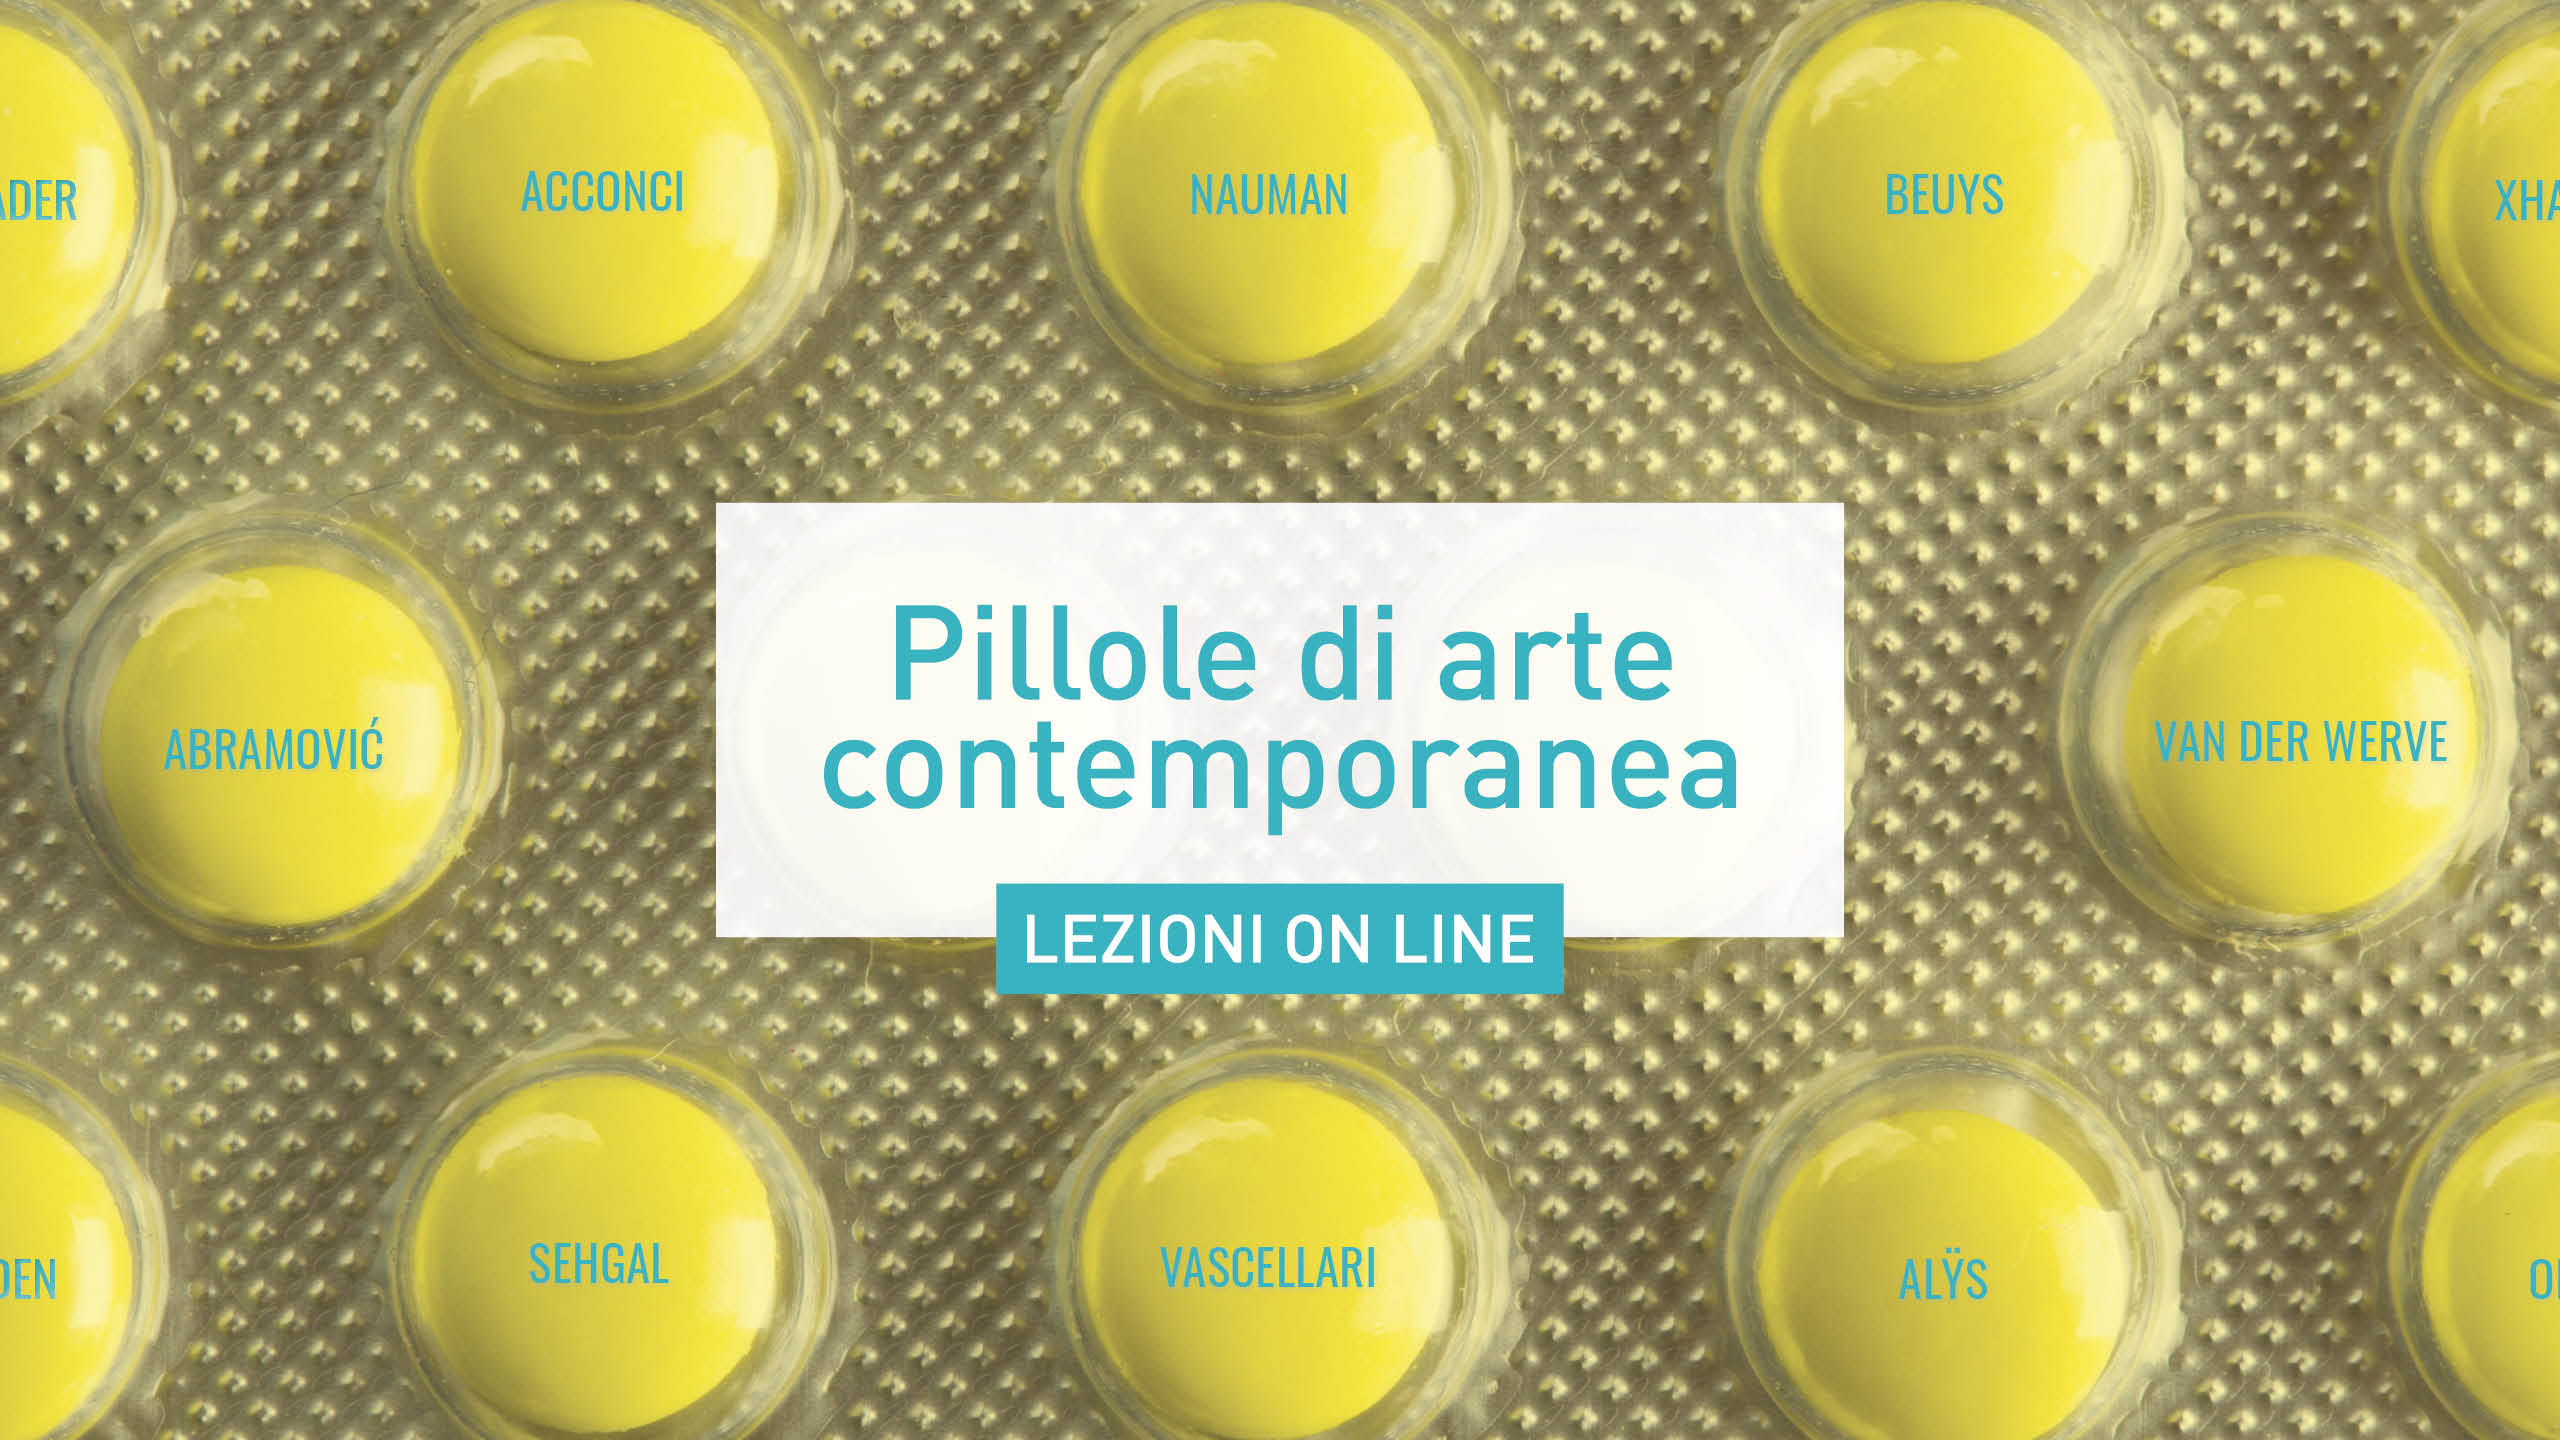 PILLOLE DI ARTE CONTEMPORANEA - Fondazione SmART- Polo per l’Arte